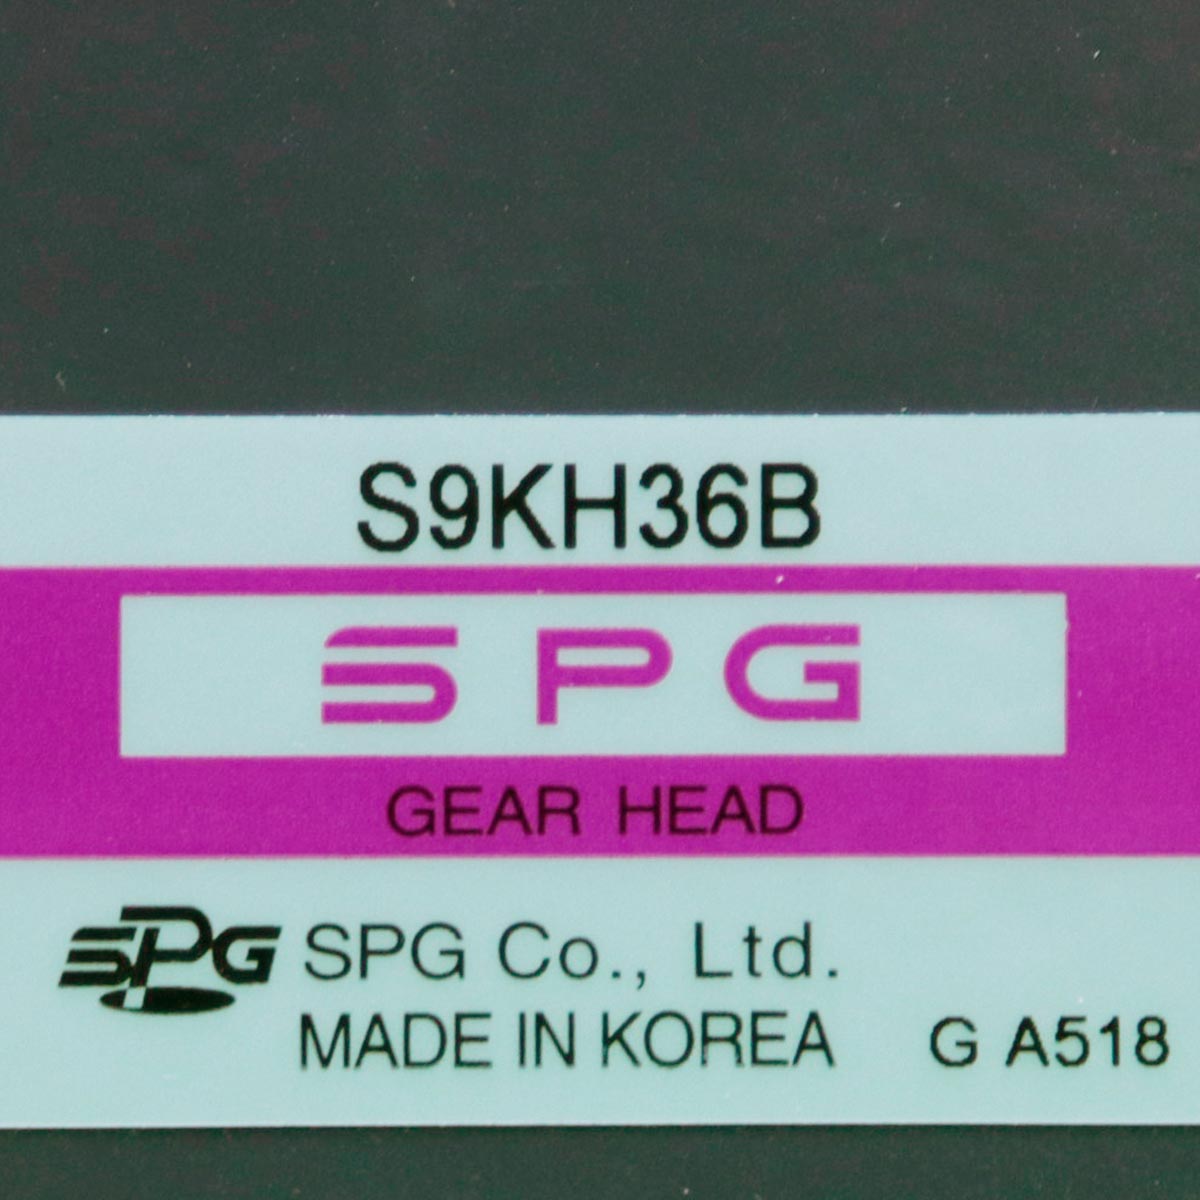 [프로모션] [신품] S9KH36B SPG(에스피지) 36:1 (1/36) 기어헤드